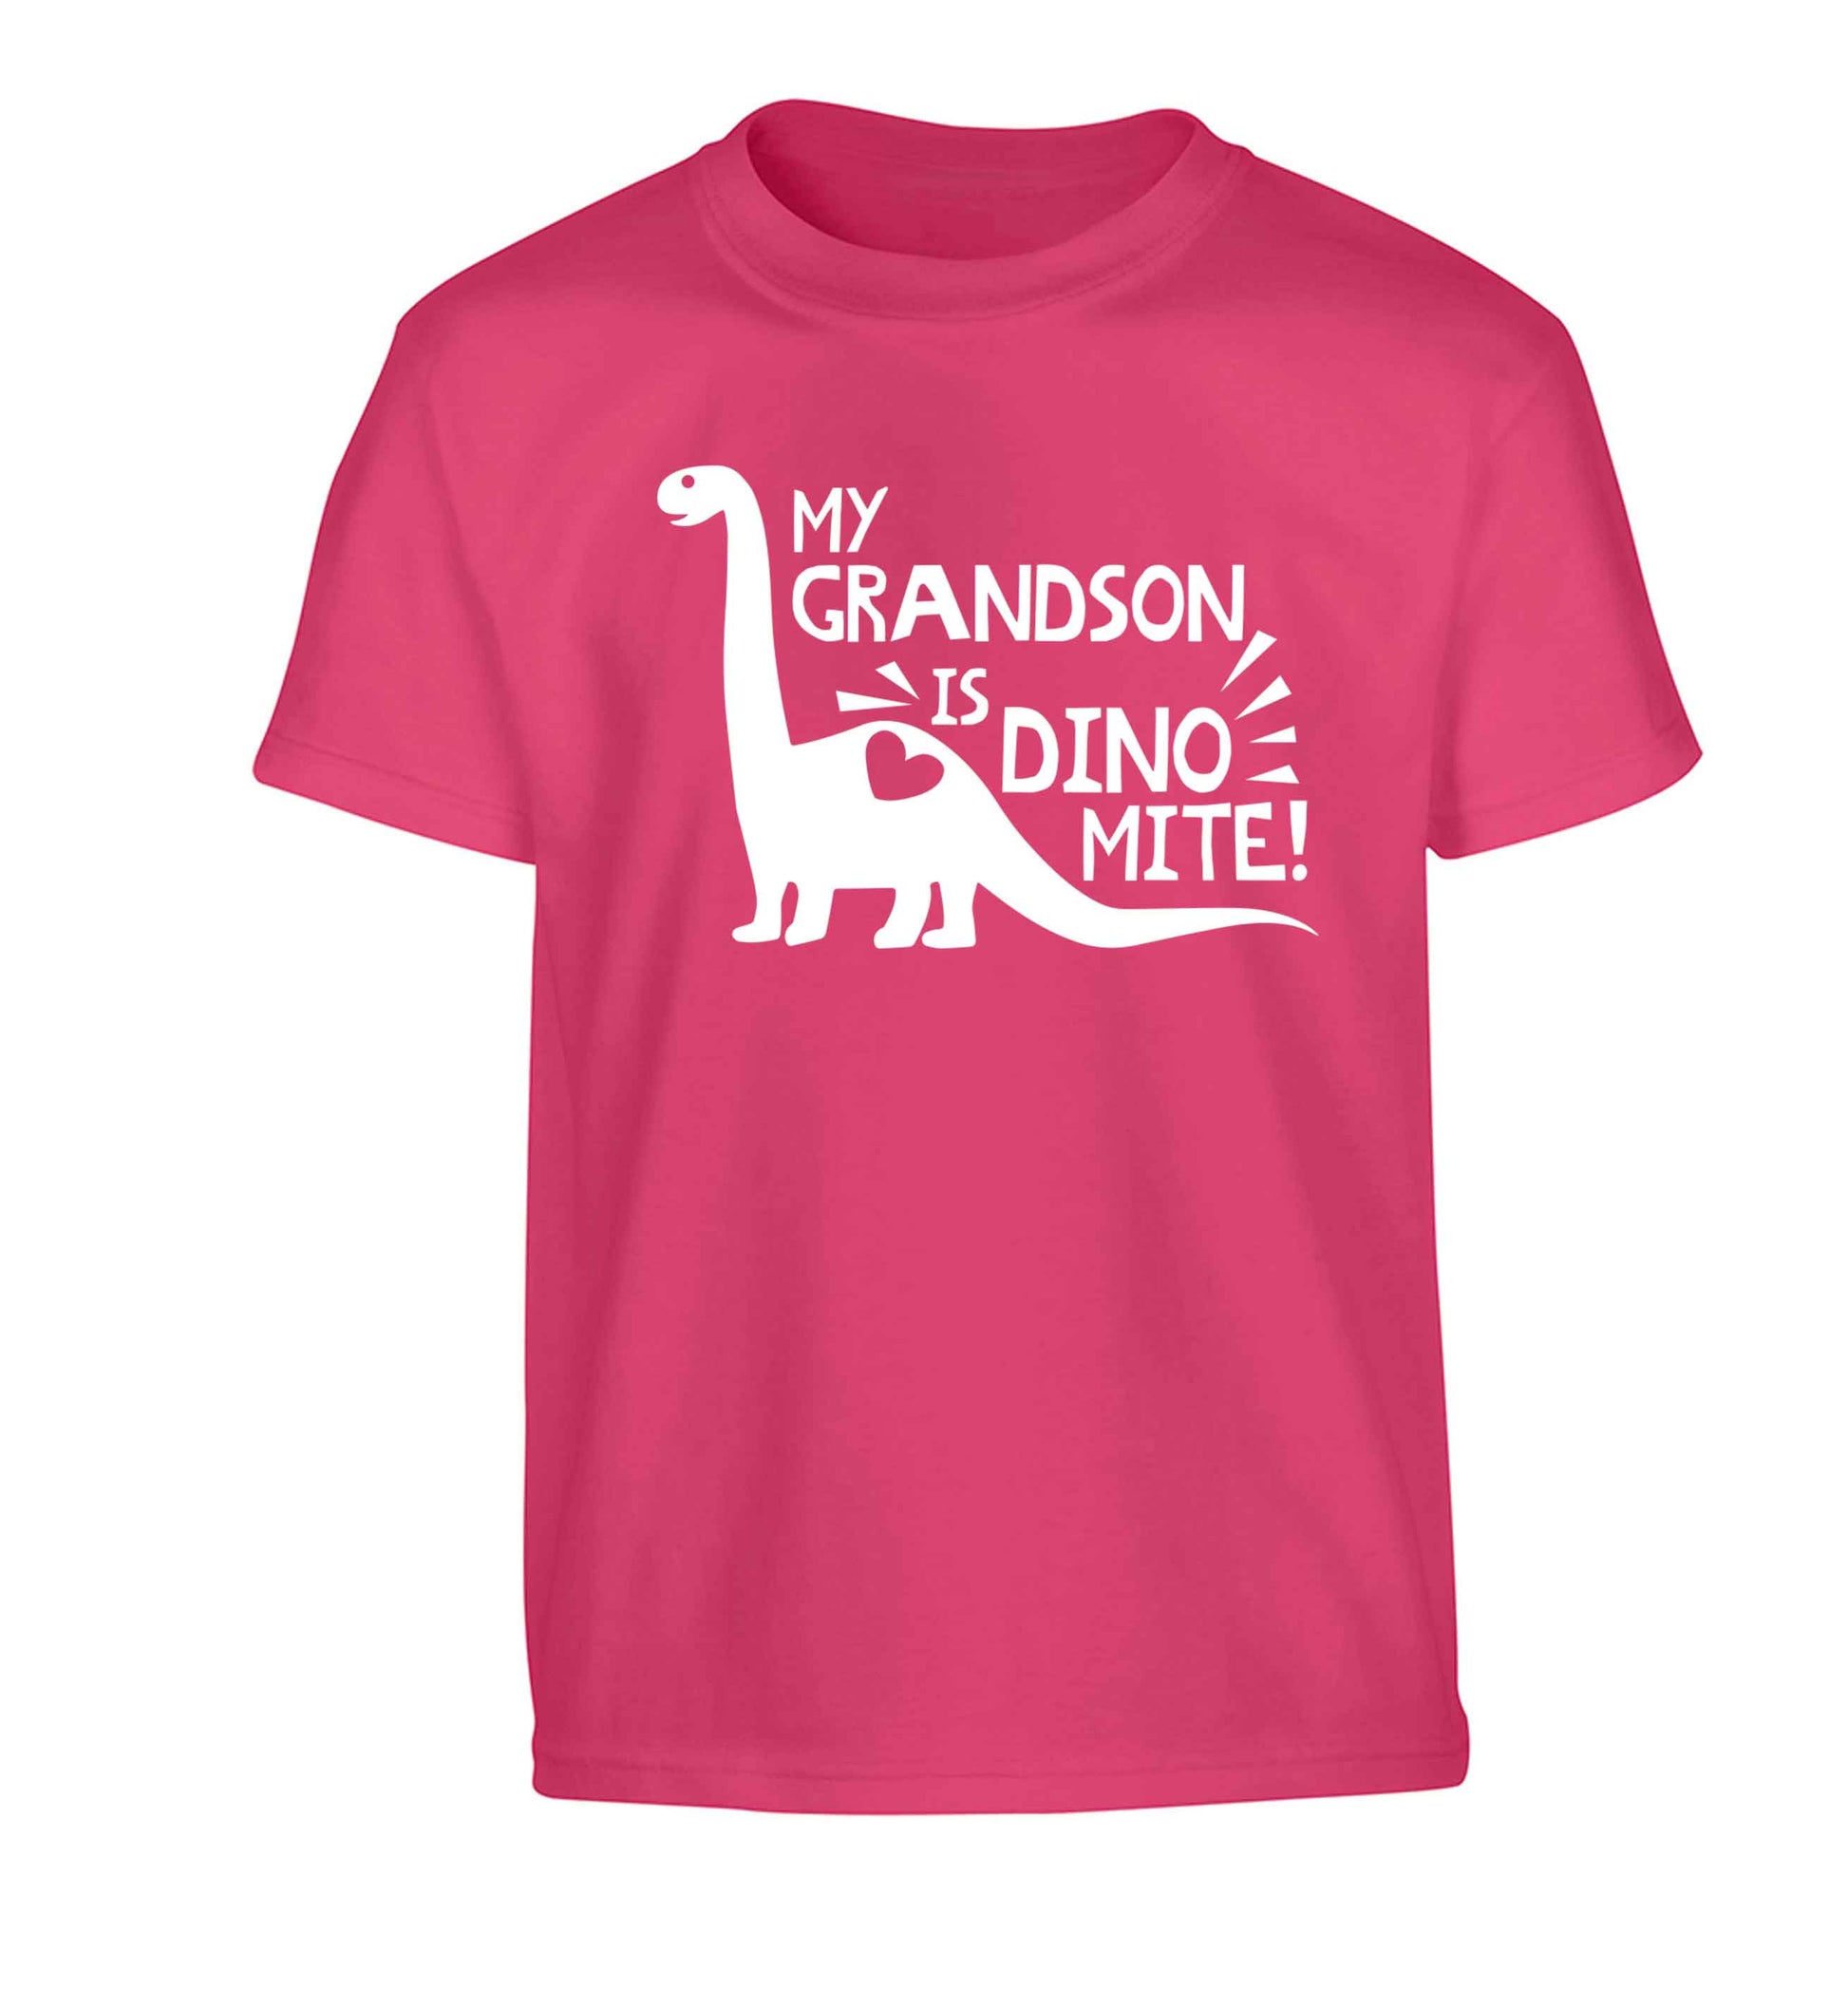 My grandson is dinomite! Children's pink Tshirt 12-13 Years